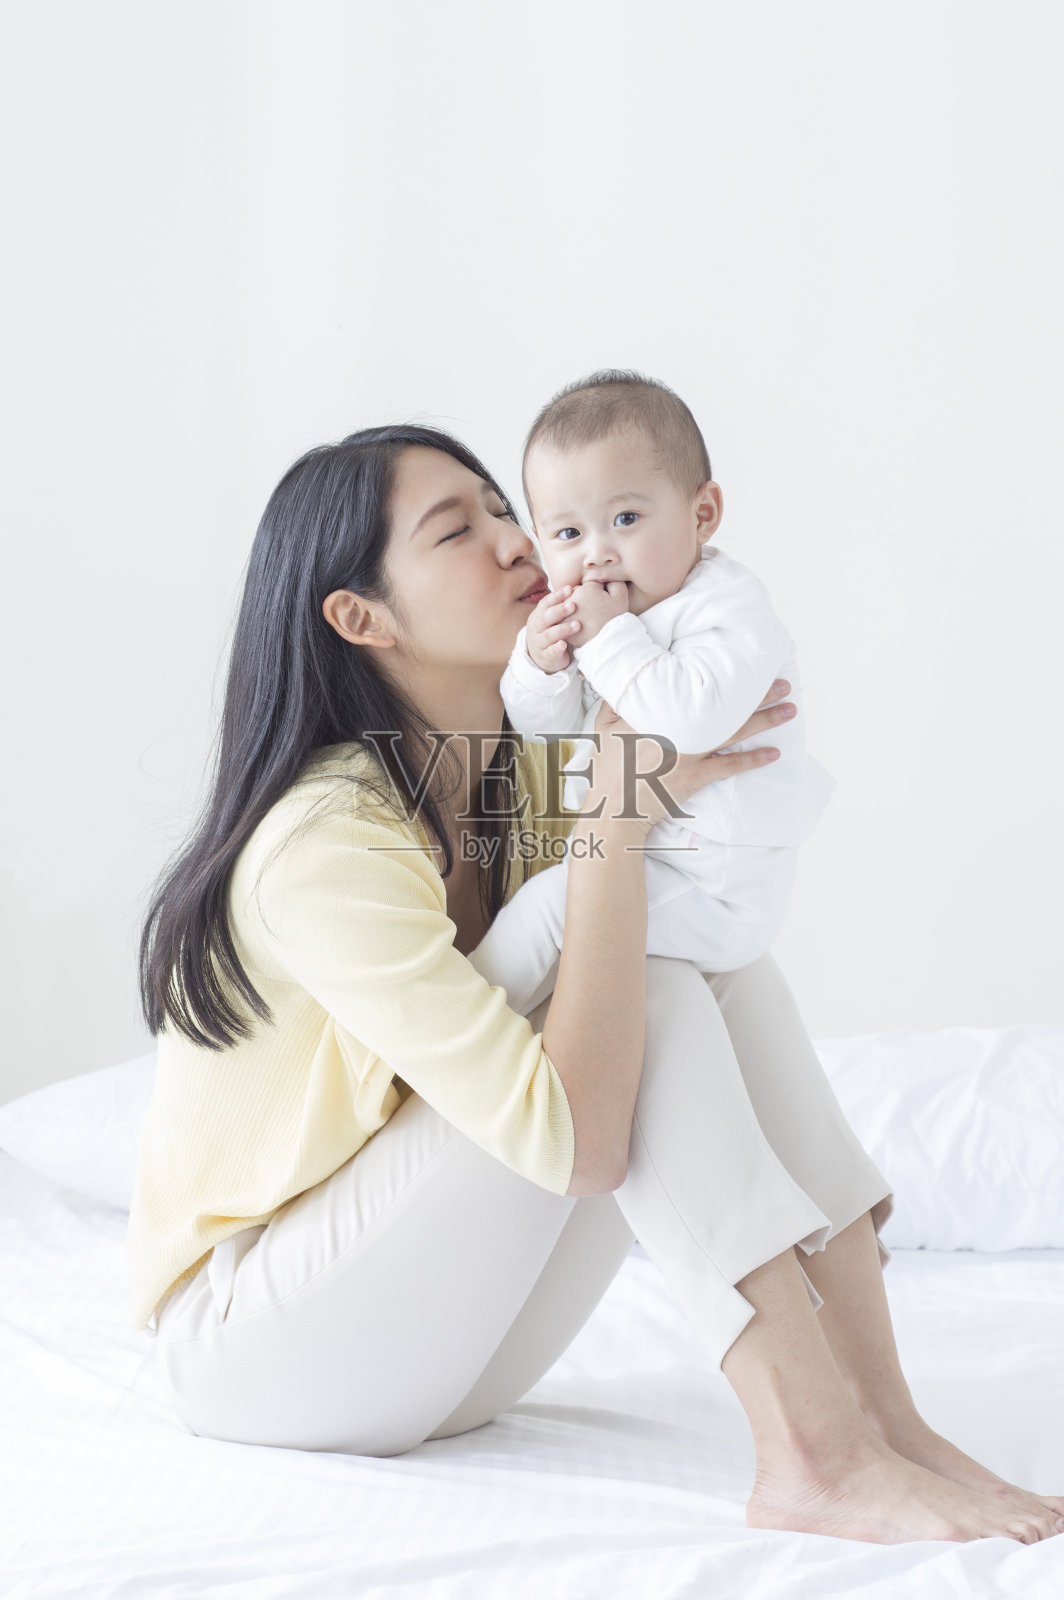 年轻妈妈陪宝宝玩耍-蓝牛仔影像-中国原创广告影像素材